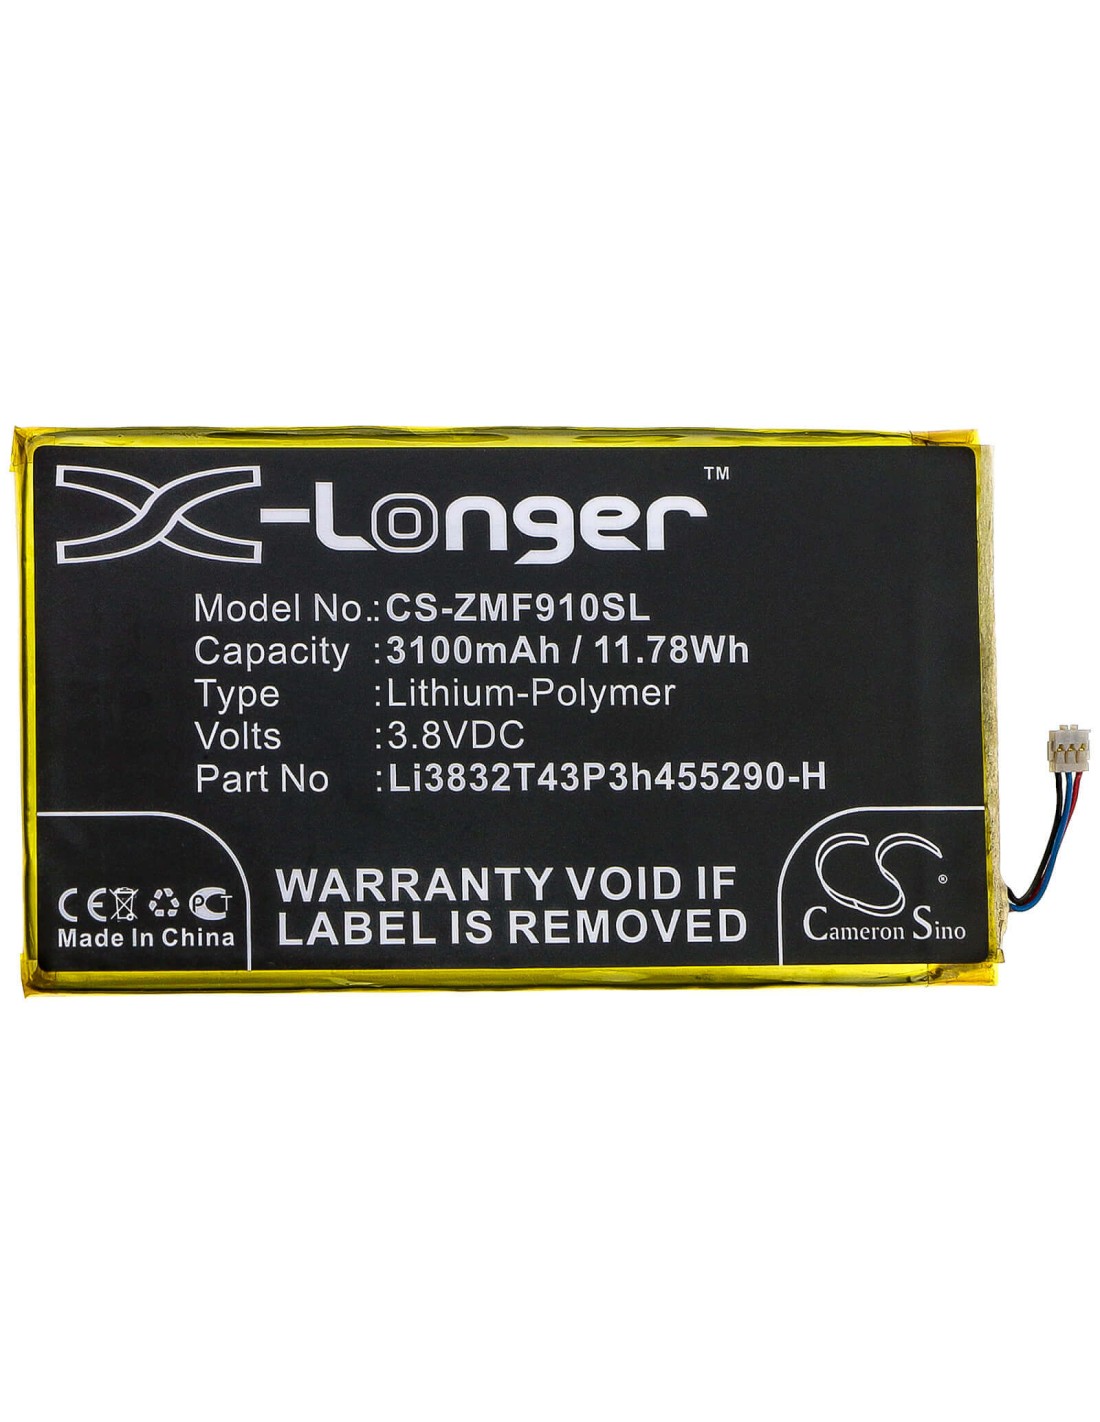 Battery for Zte, Mf900 3.8V, 3100mAh - 11.78Wh